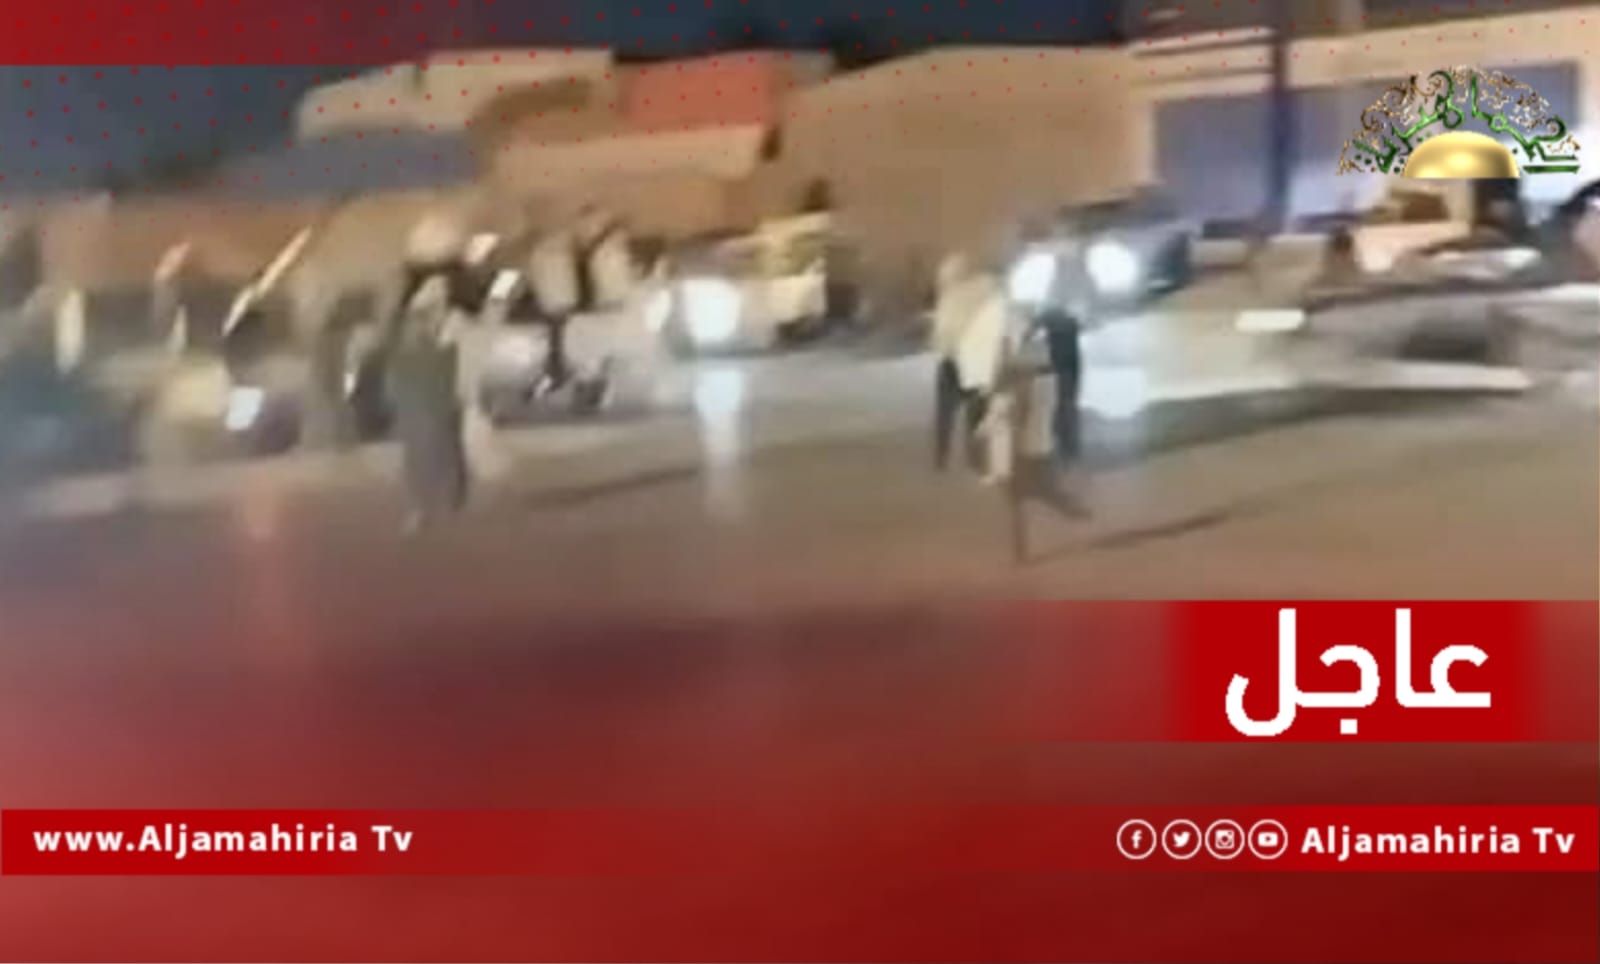 عاجل / مصادر: نزوح عائلات شارع السانبا بعد سماع أصوات رماية بالأسلحة الثقيلة داخل معسكر 7 ابريل في طرابلس